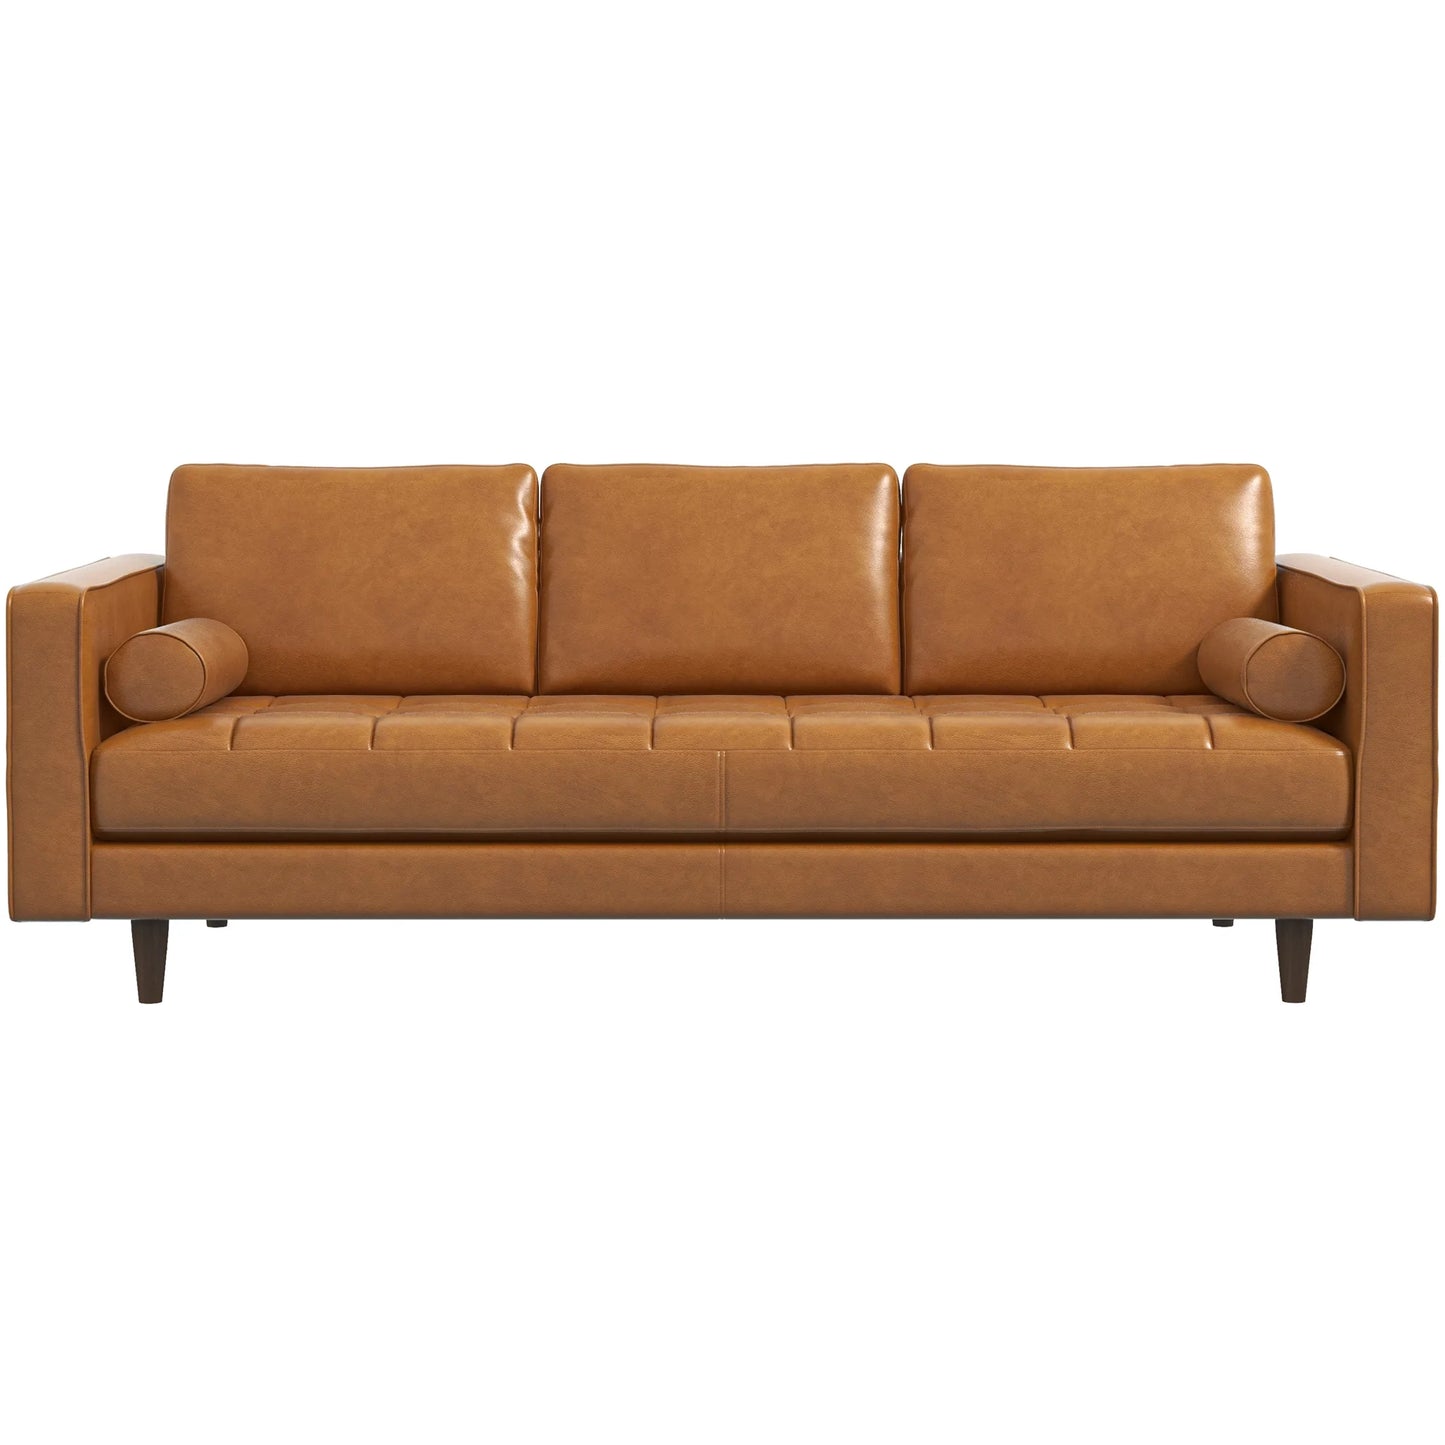 Tessa Leather Sofa (Tan Leather)